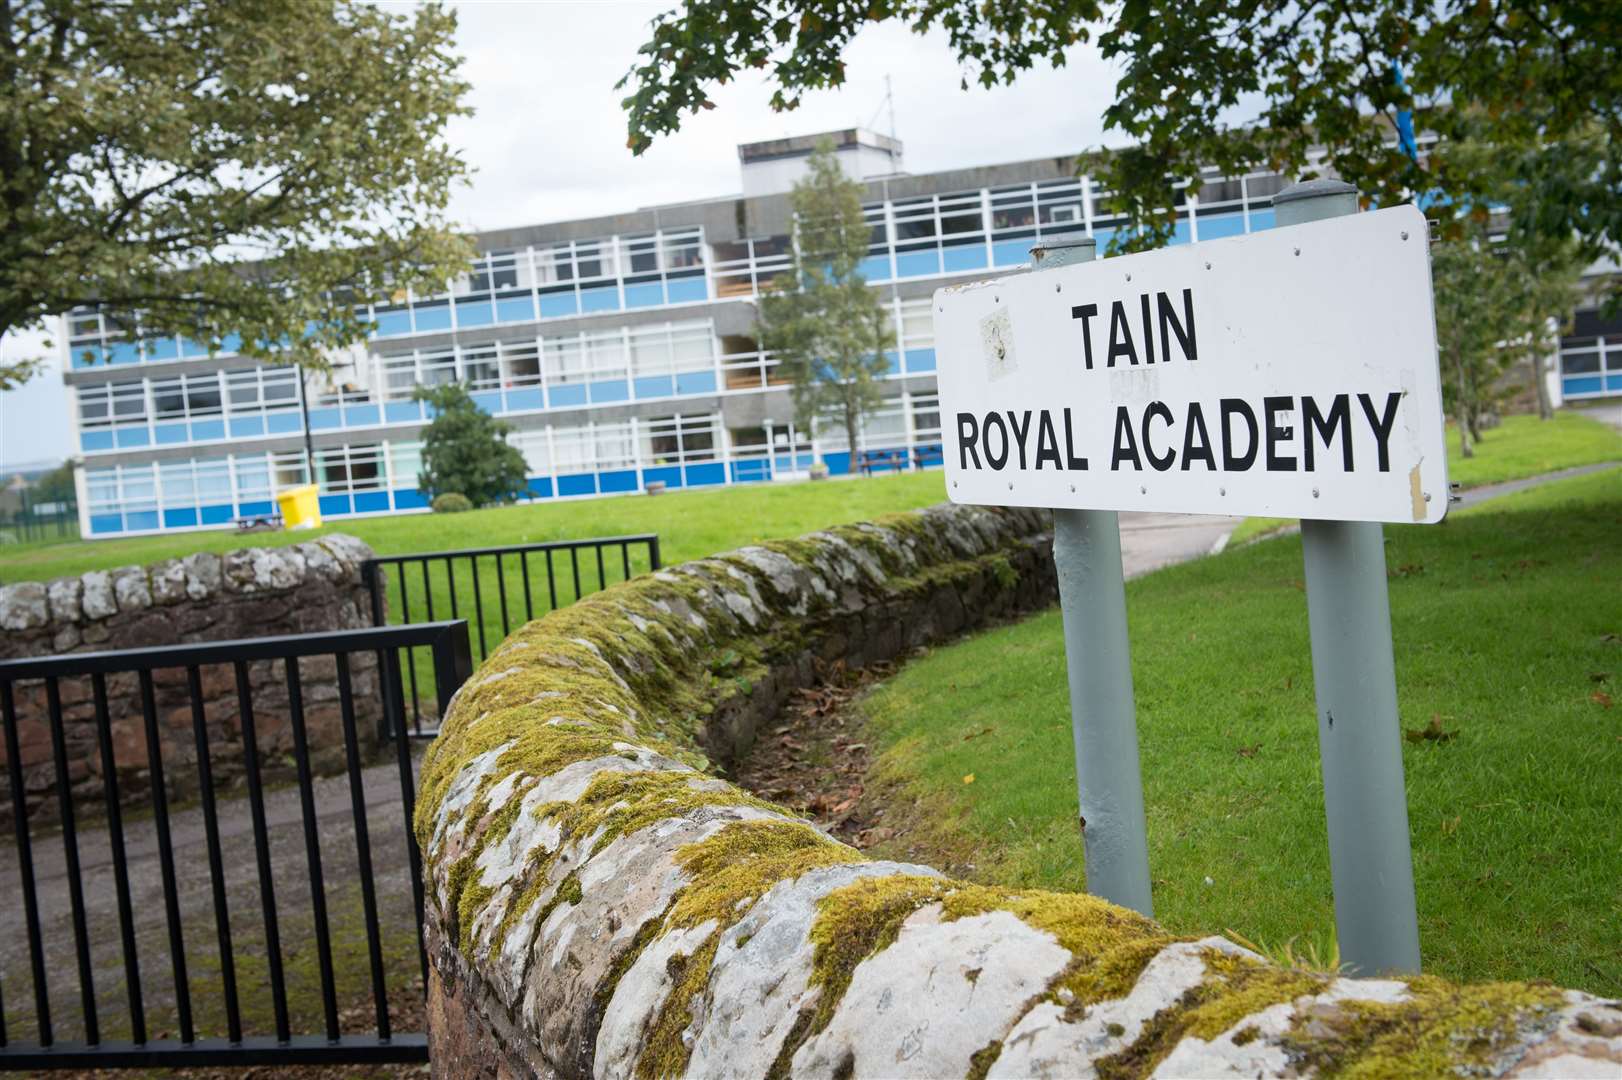 Tain Royal Academy says it will follow Highland Council advice.